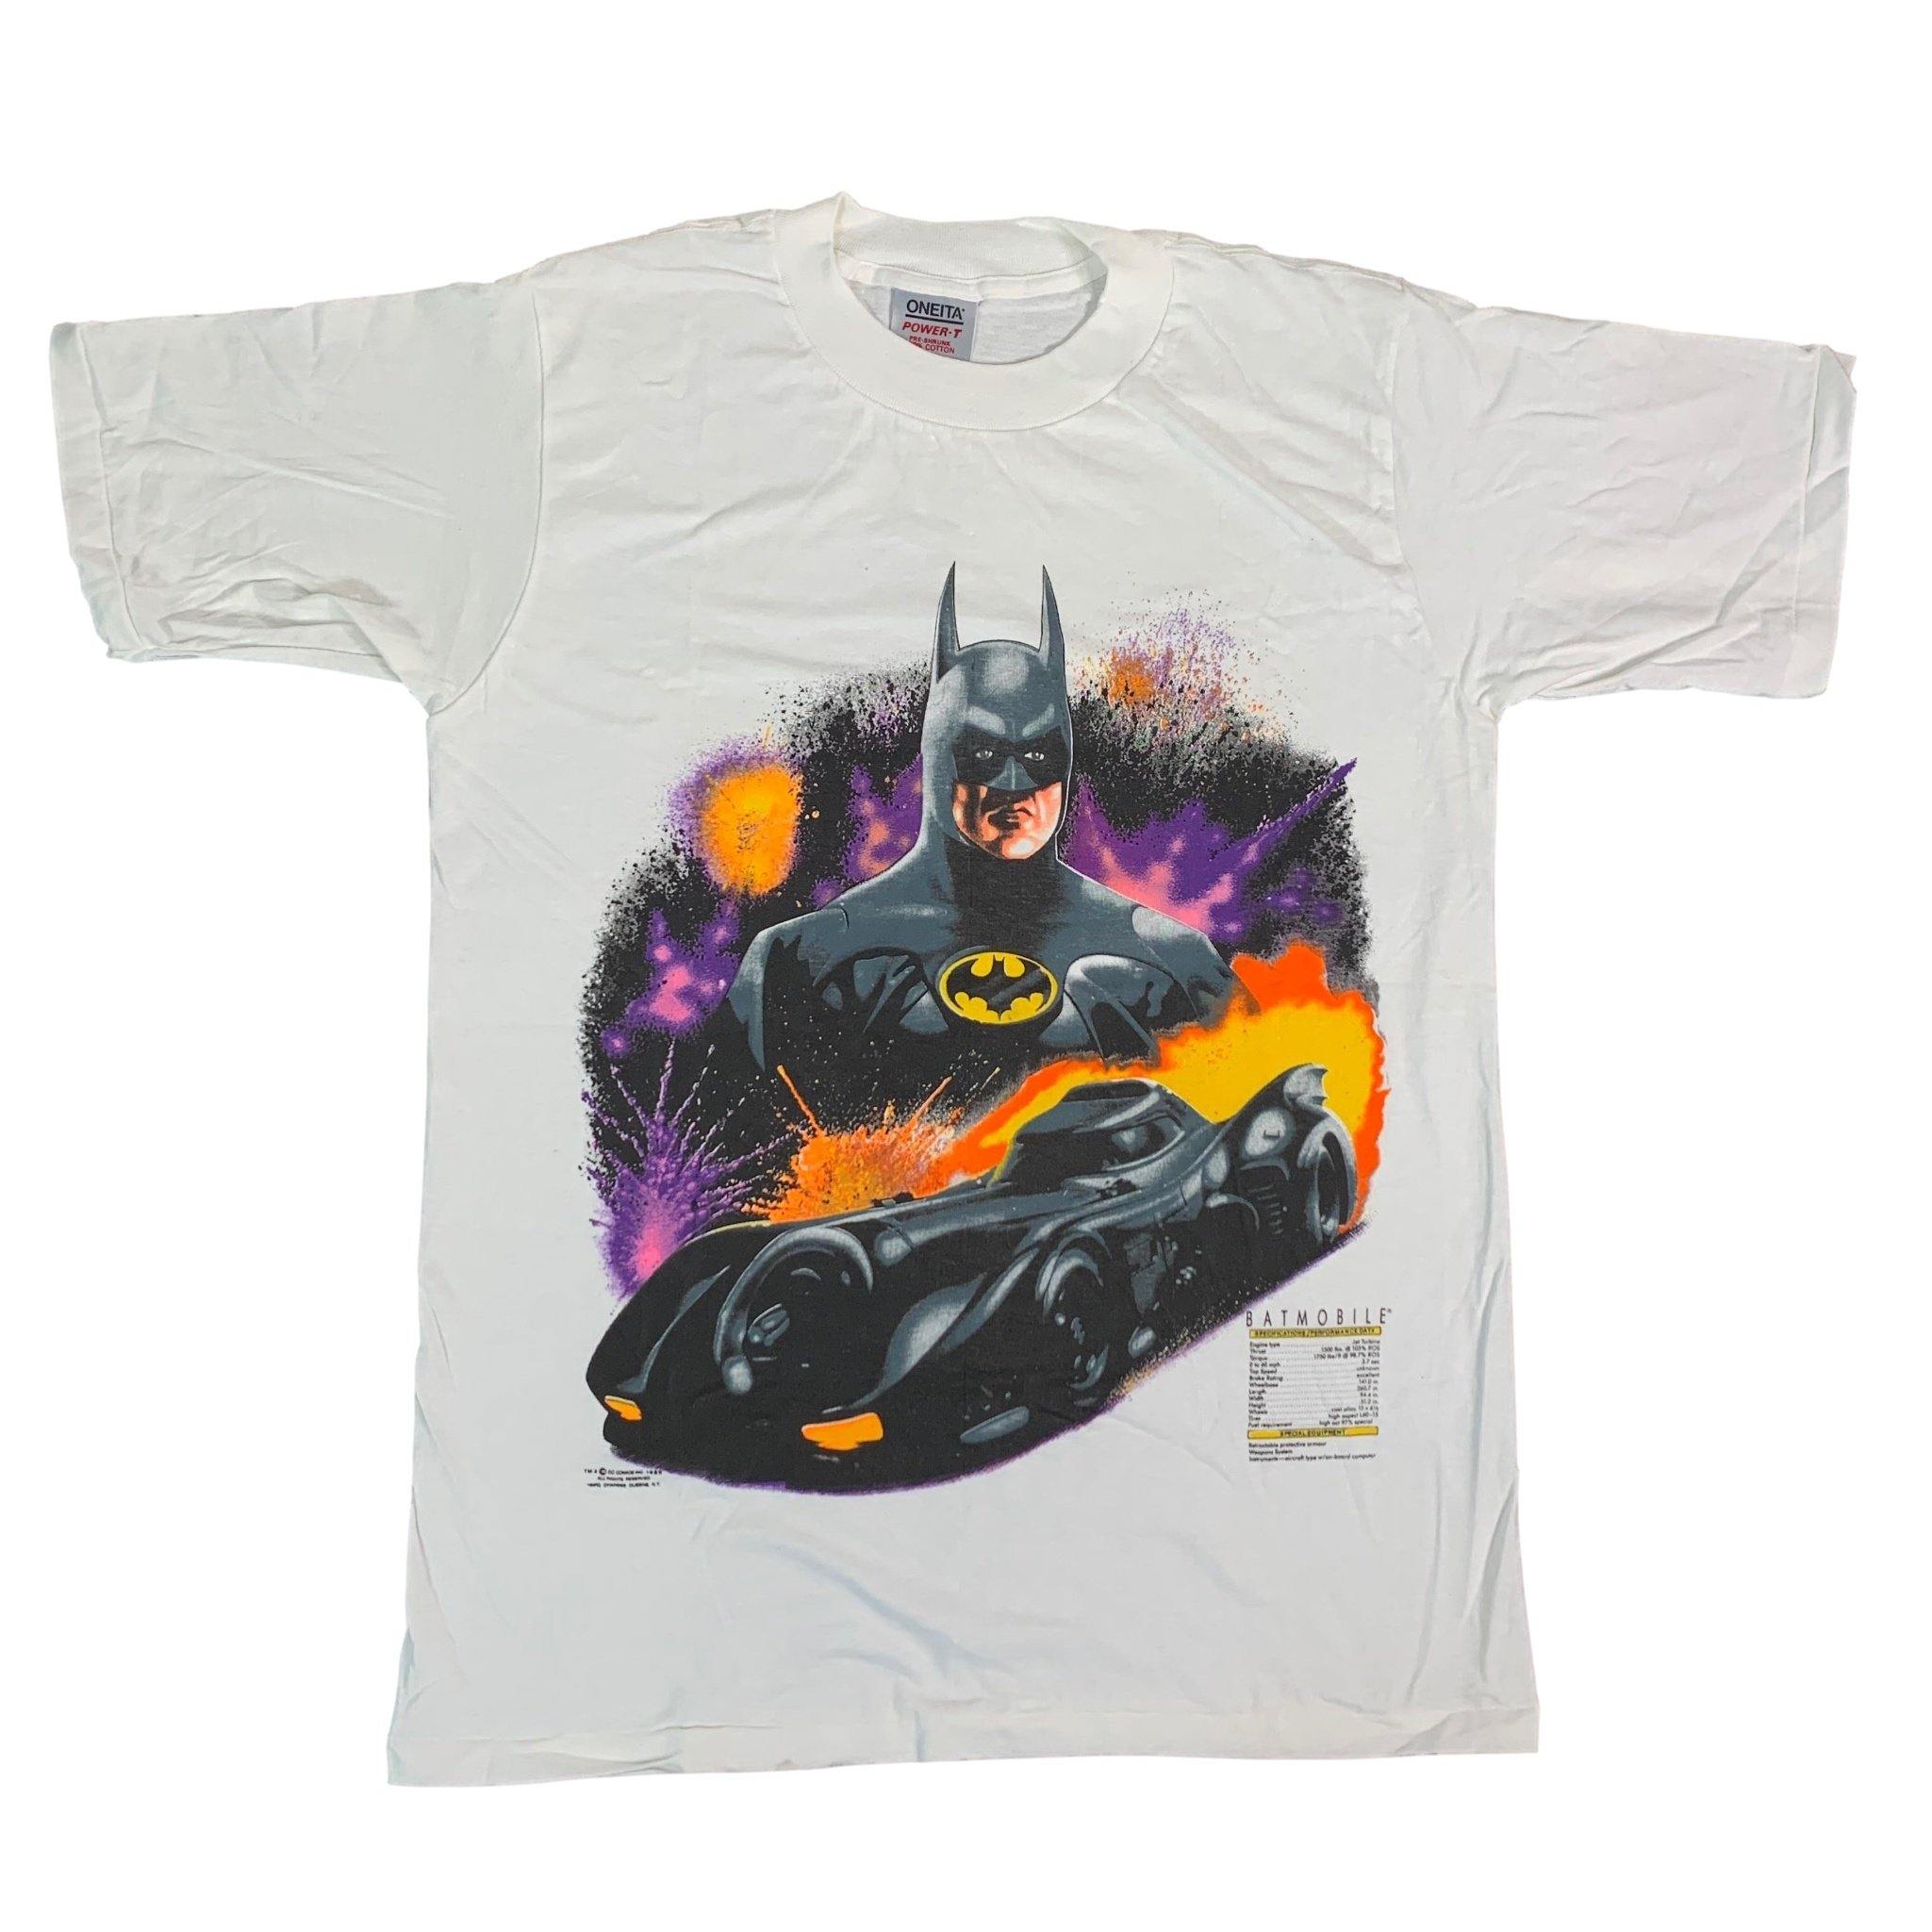 Batman 1989 "Batmobile" jointcustodydc